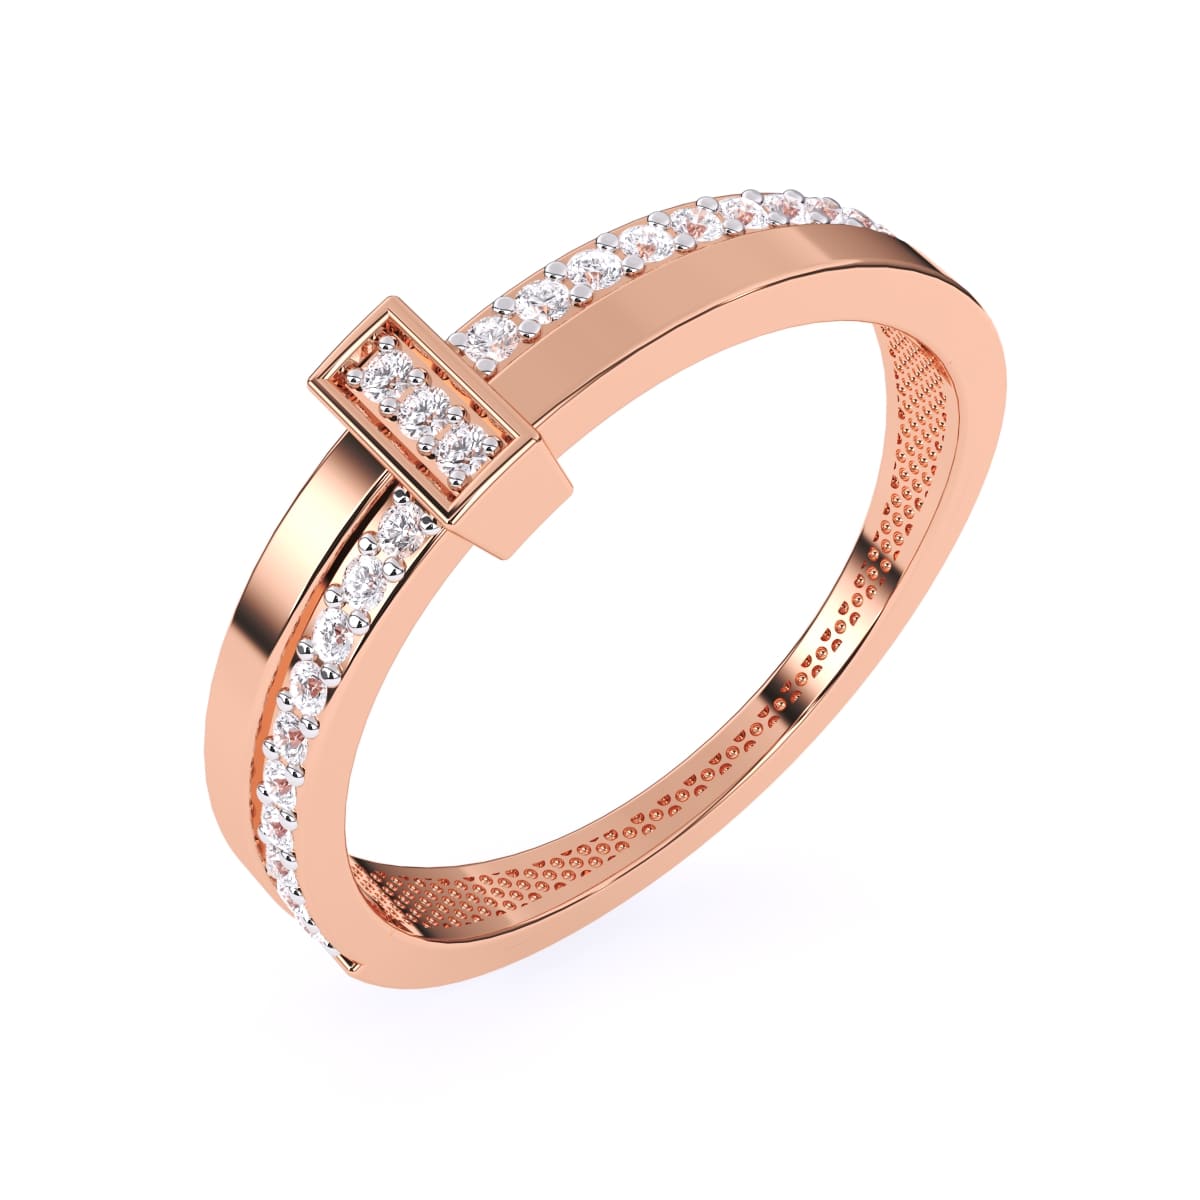 Leela Gems - Diamond Rings under 20,000THB - leelagems